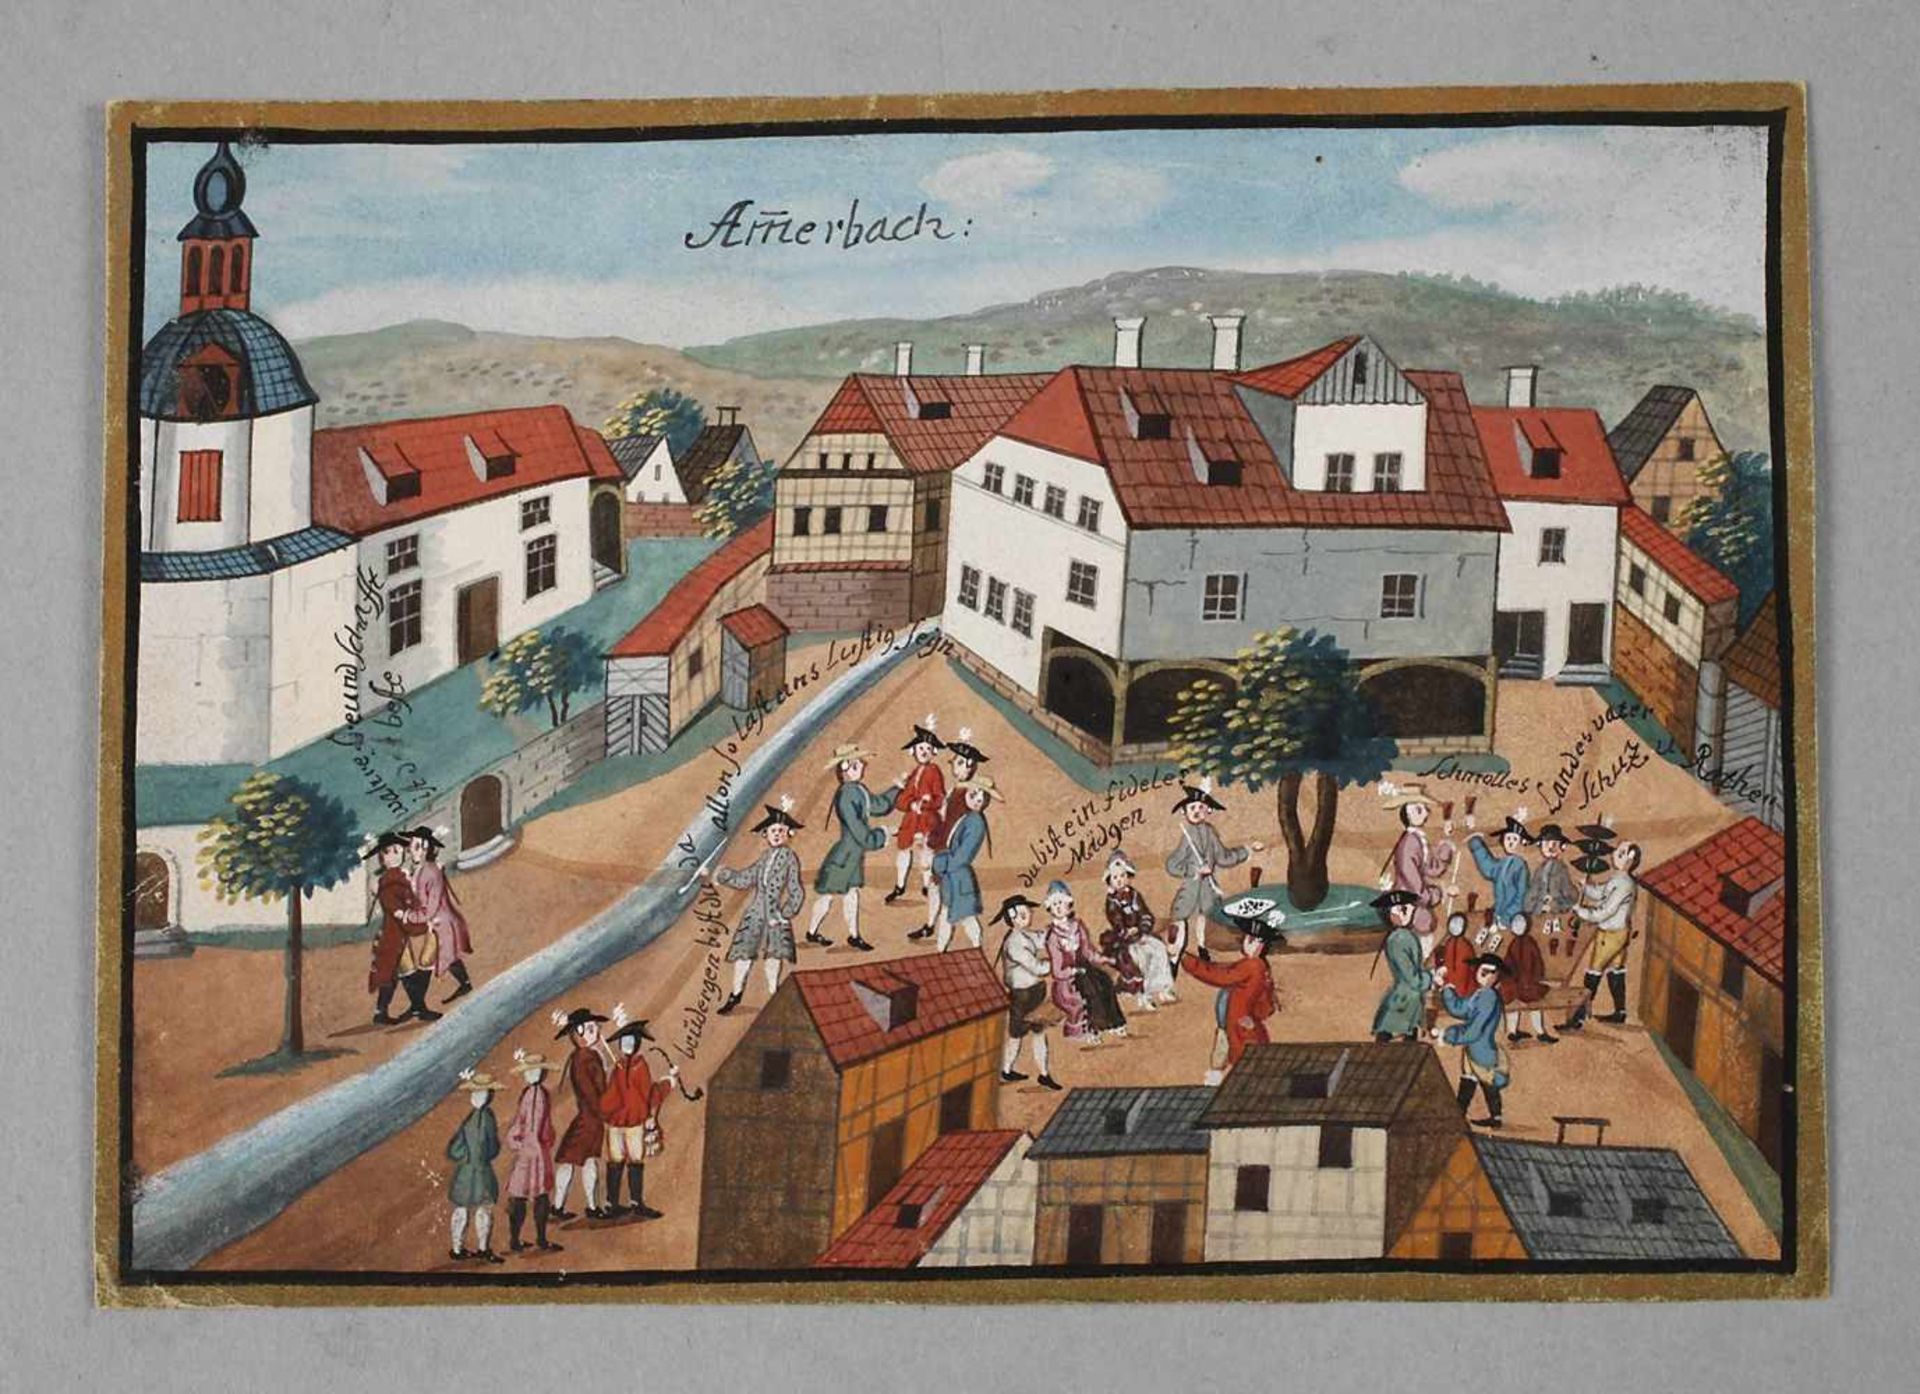 Stammbuchbildchen Ammerbach bei Jena Jena um 1750, Ansicht des Dorfes Ammerbach, gezeigt wird eine